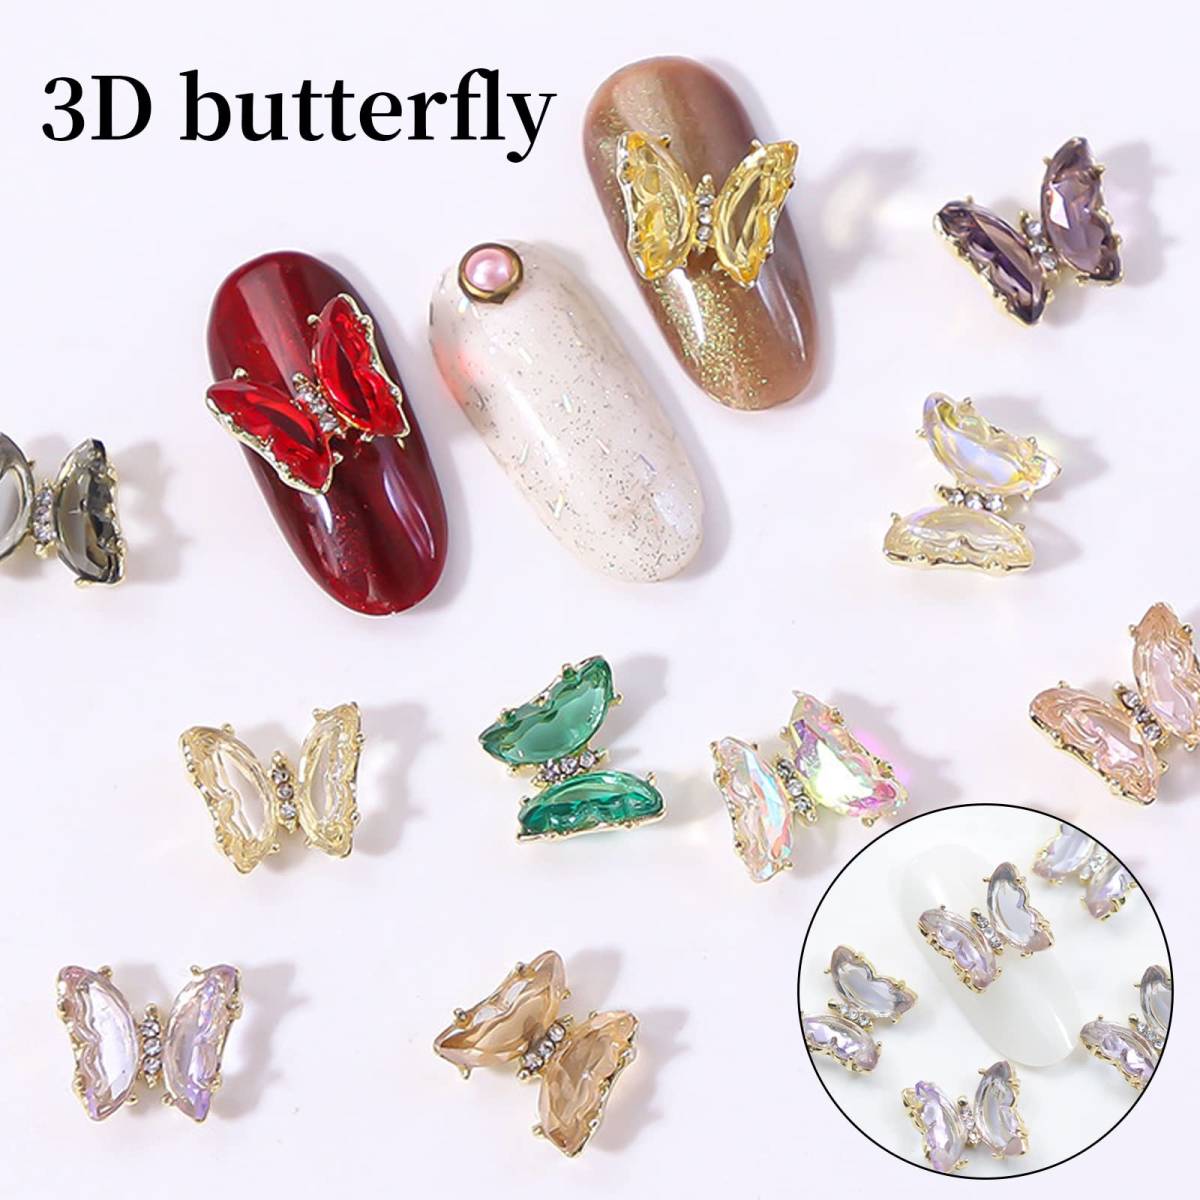 [ специальная цена распродажа ] Kirakira стразы Stone бабочка нейл-арт довольно большой ювелирные изделия детали бабочка декоративные элементы цельный 3d